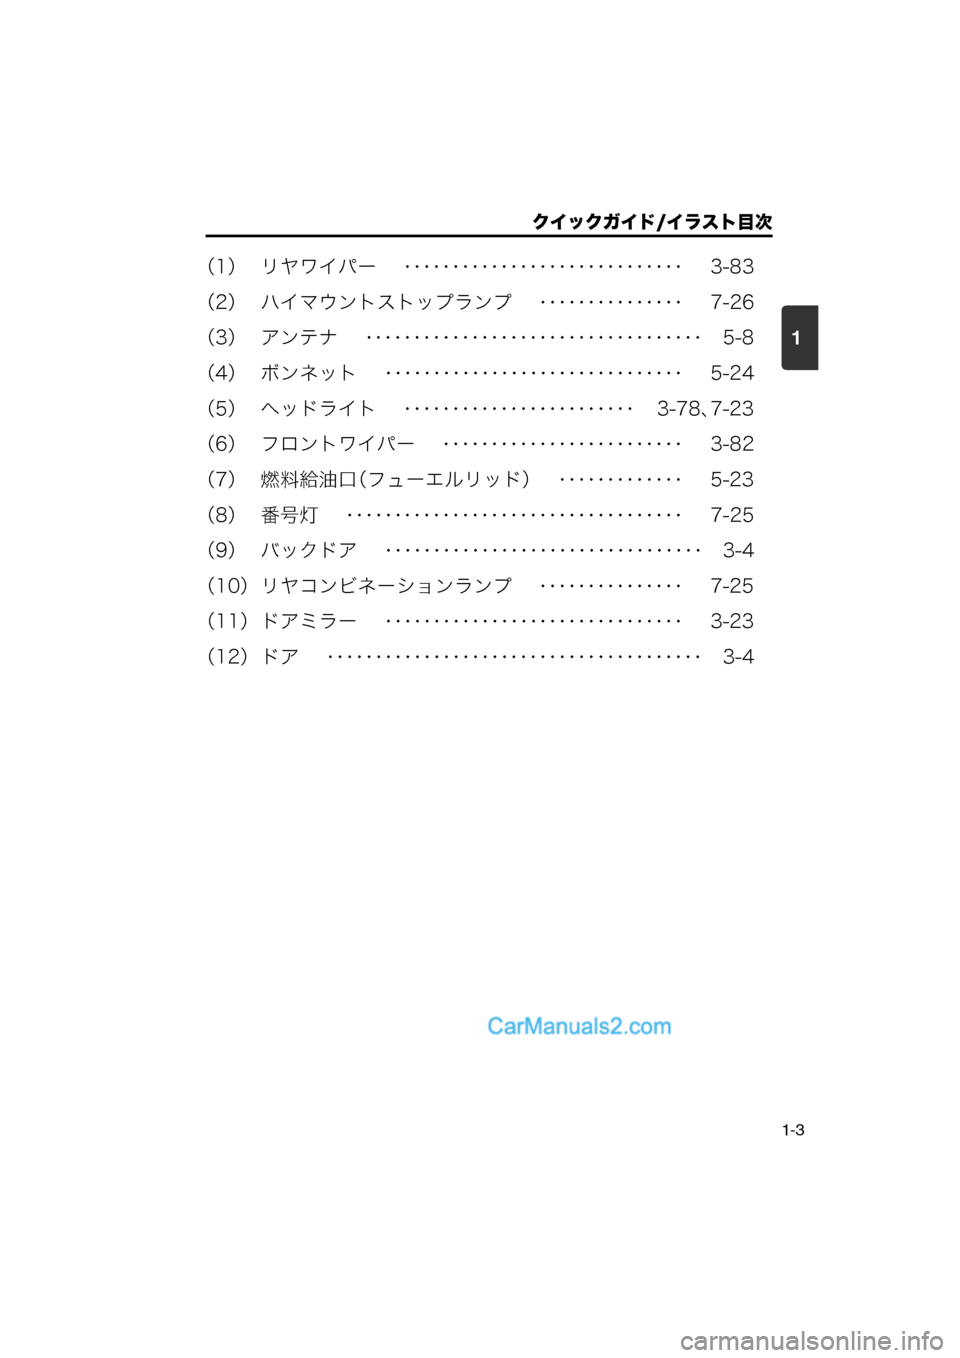 MAZDA MODEL CARROL 2013  取扱説明書 (キャロル) (in Japanese) 1
クイックガイド/イラスト目次
1-3
（1） リヤワイパー　 ･････････････････････････････ 　3-83
（2） ハイマウント�